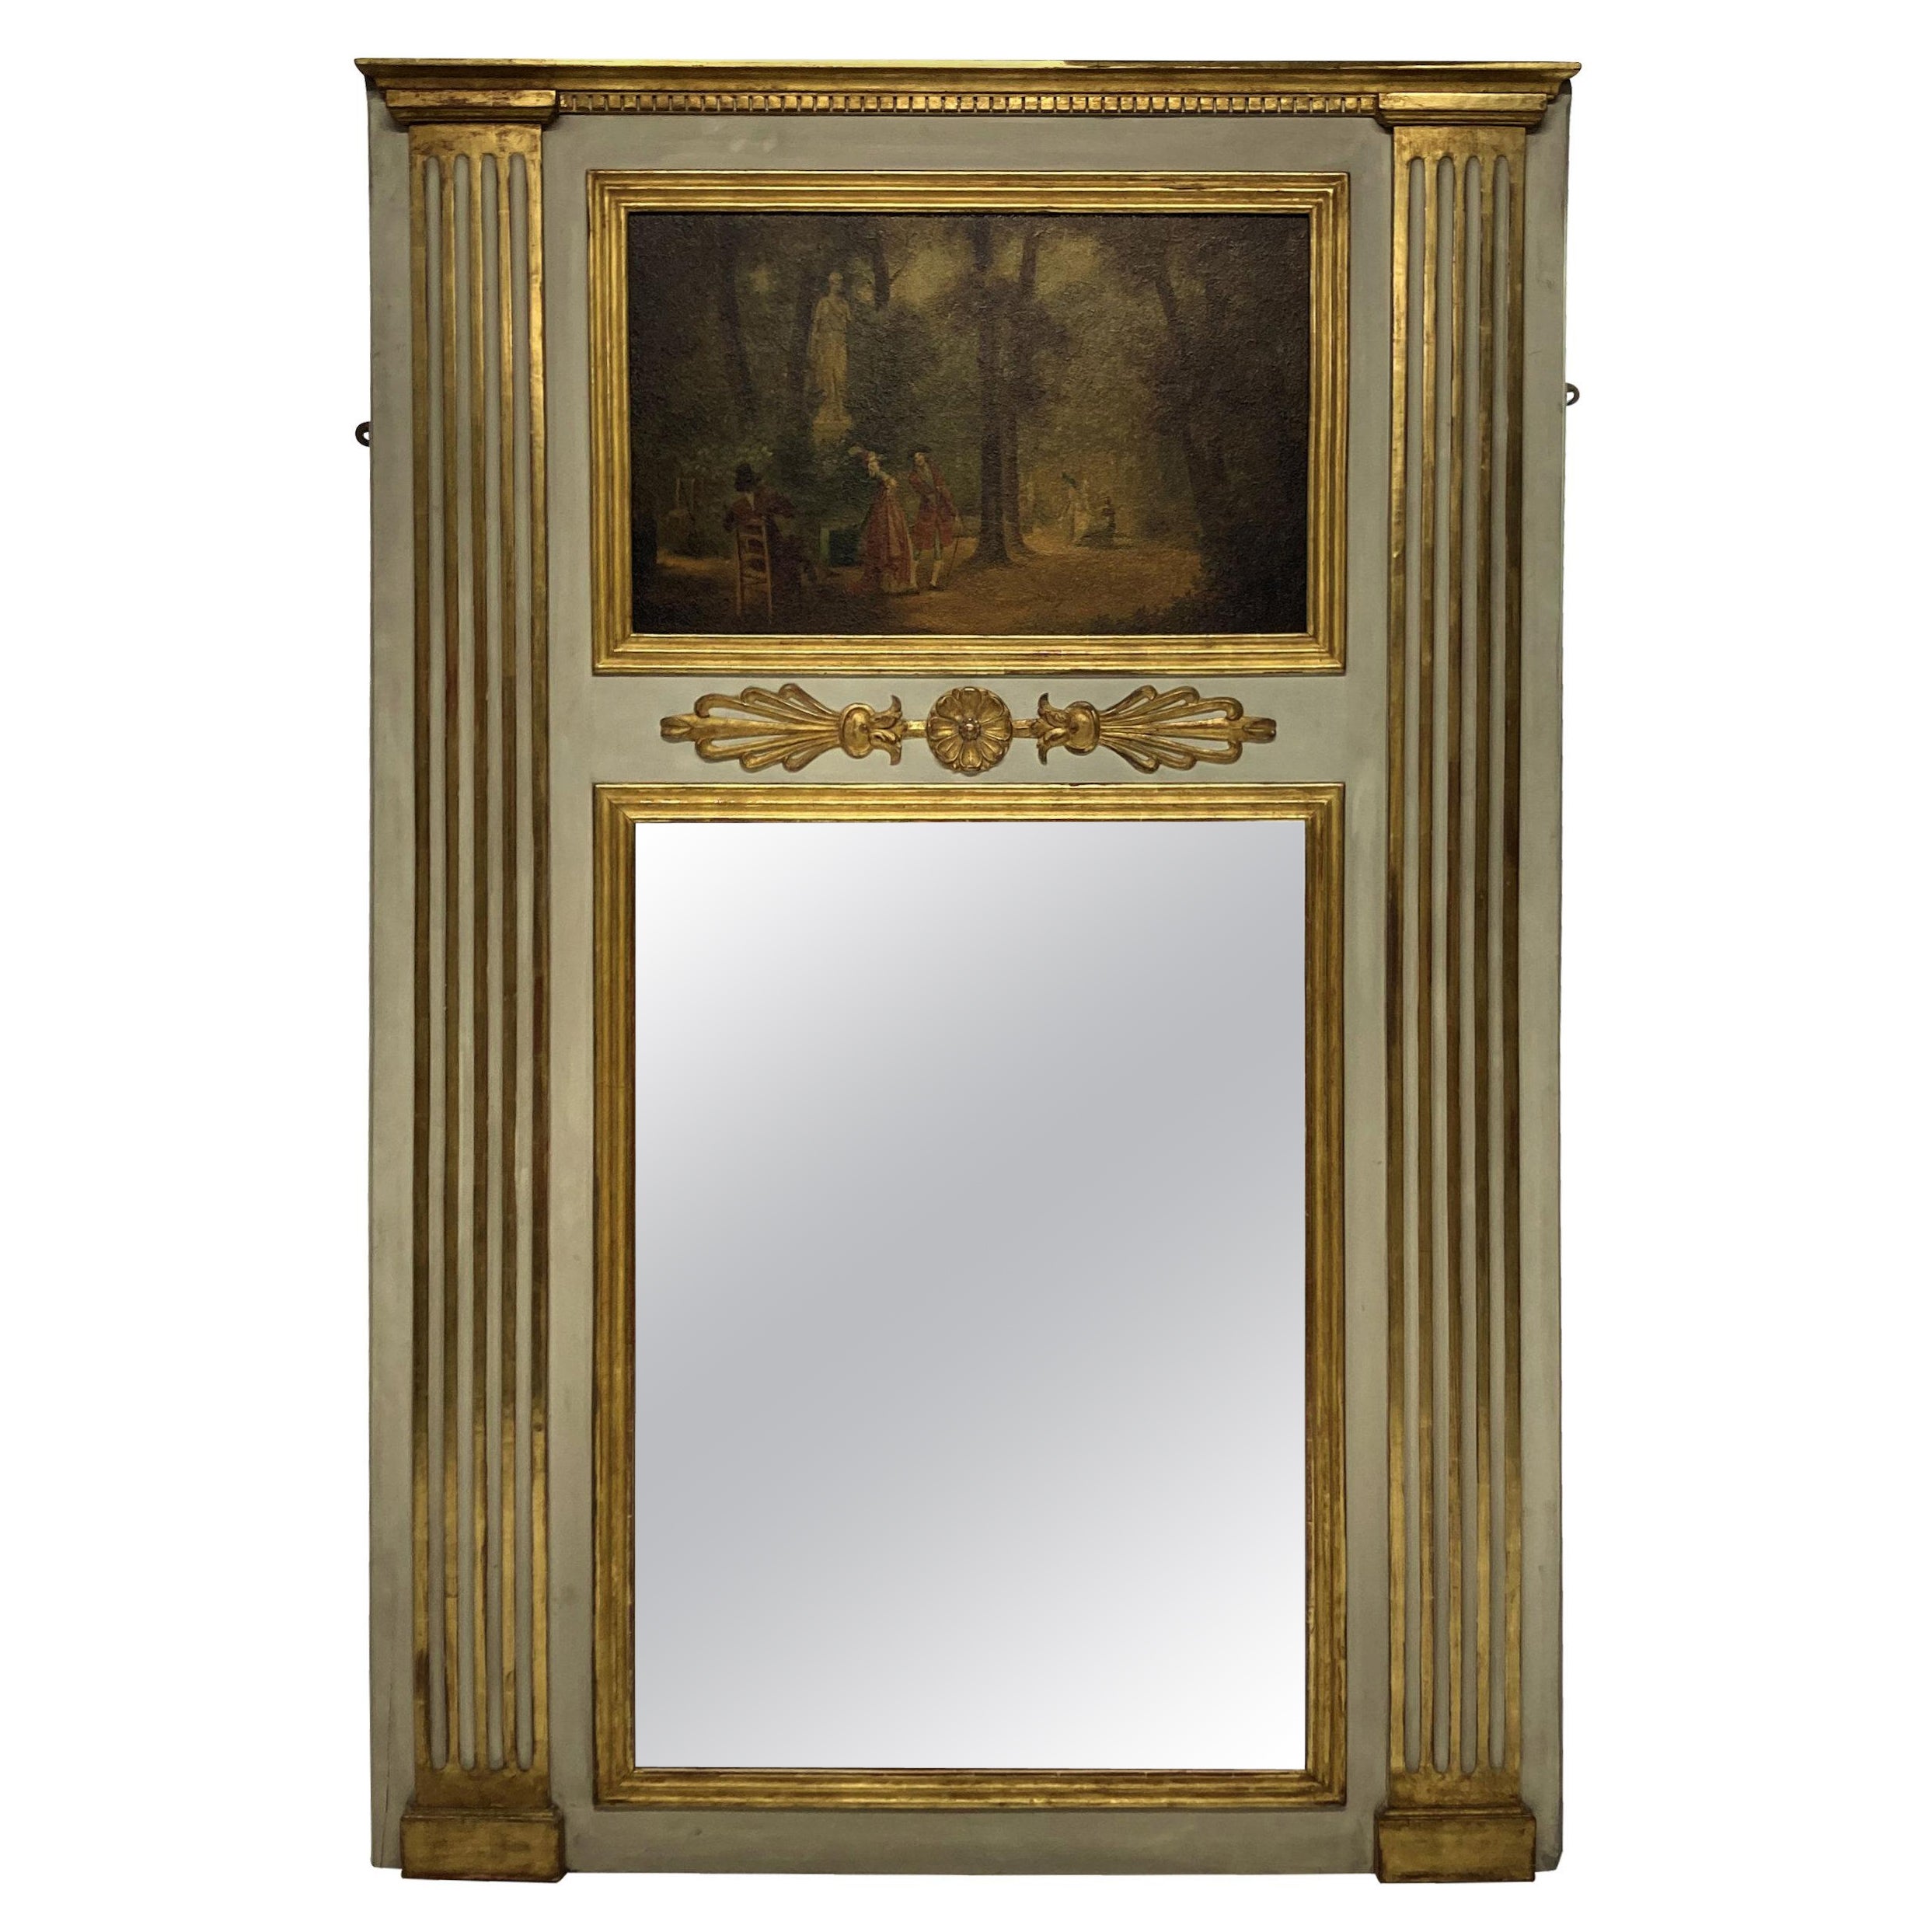 Bemalter und vergoldeter Trumeau-Spiegel mit bemalter Tafel